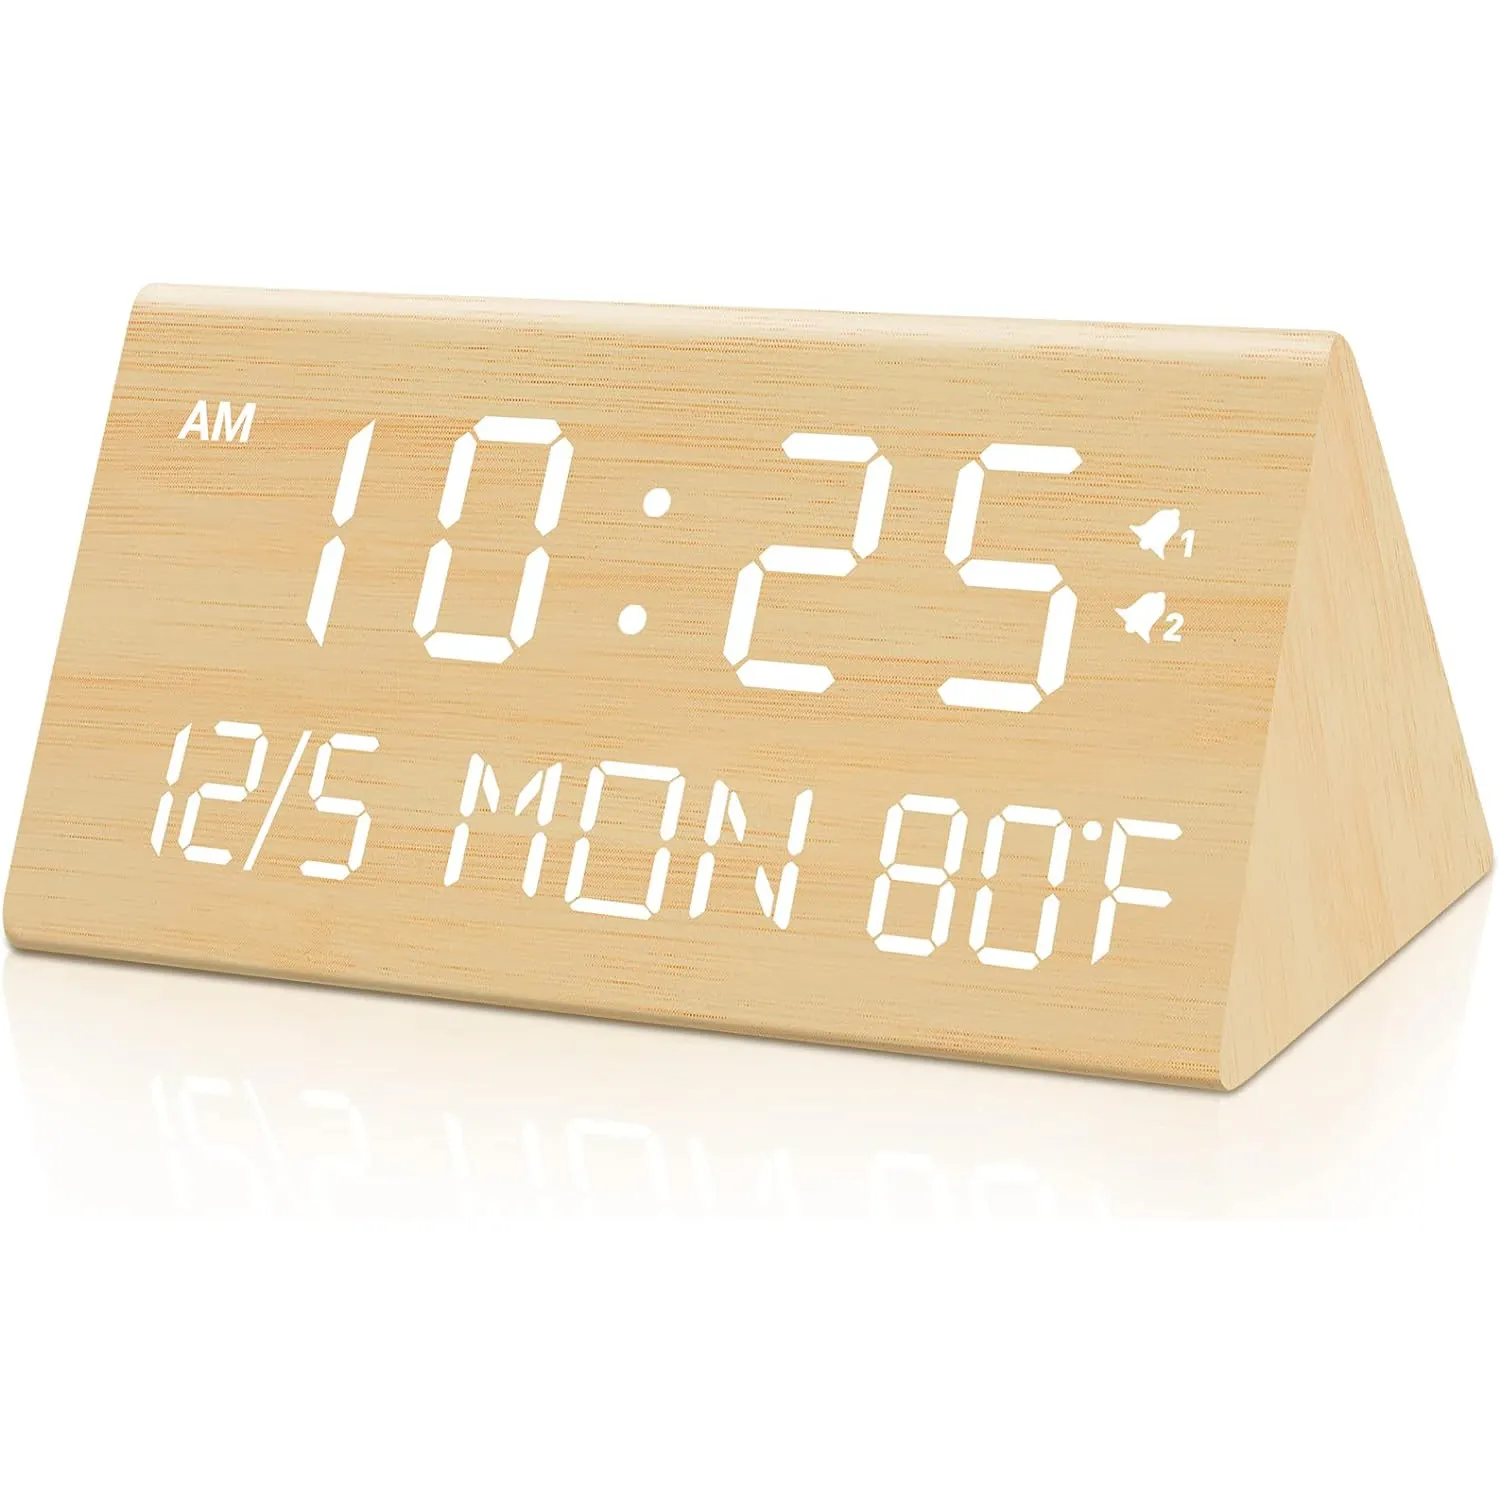 โมเดิร์นมัลติฟังก์ชั่เดสก์ท็อปอิเล็กทรอนิกส์สามเหลี่ยมตารางไม้ LED นาฬิกาปลุกดิจิตอลอุณหภูมิความชื้น